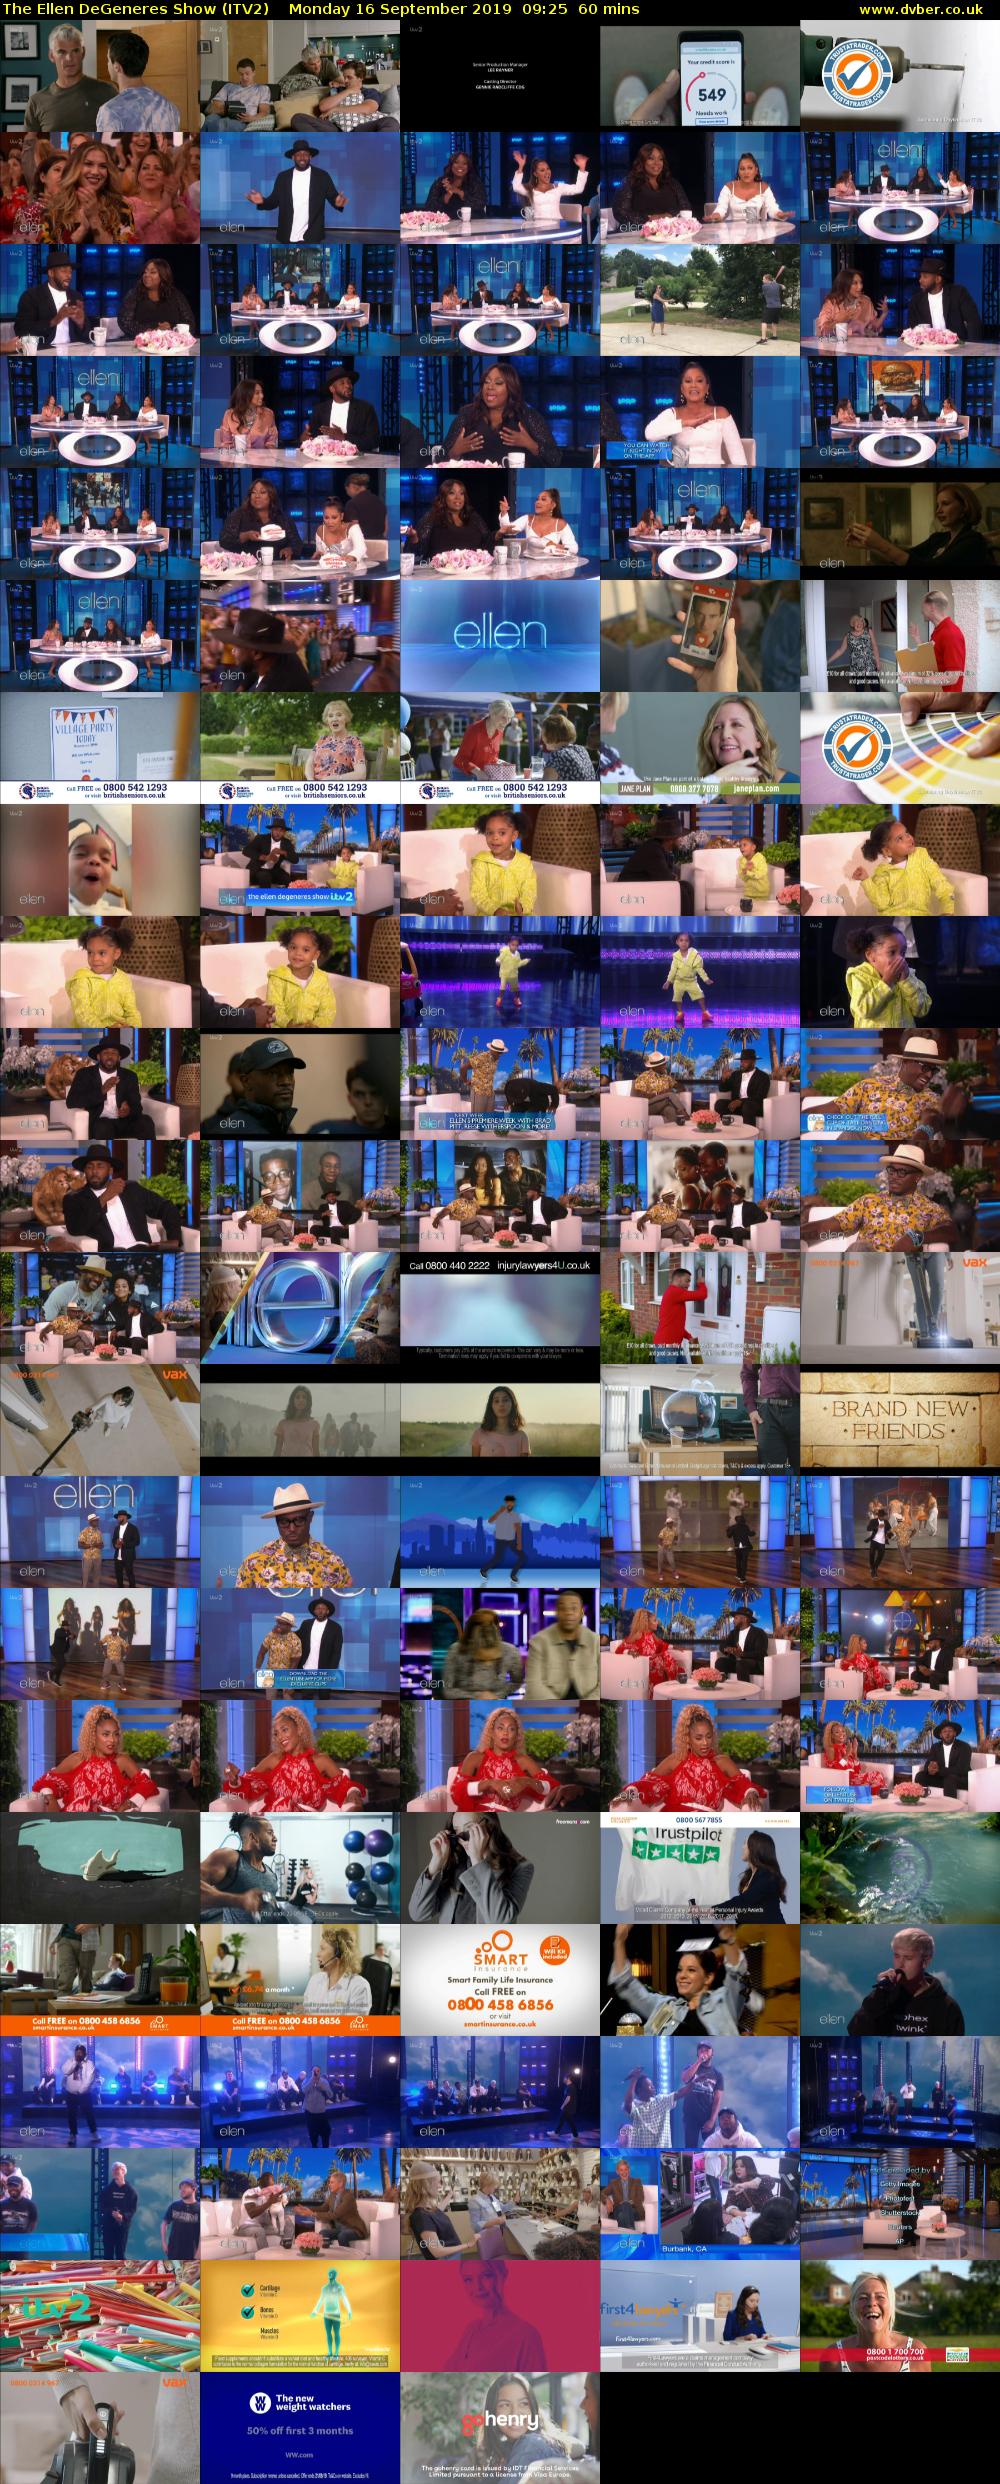 The Ellen DeGeneres Show (ITV2) Monday 16 September 2019 09:25 - 10:25